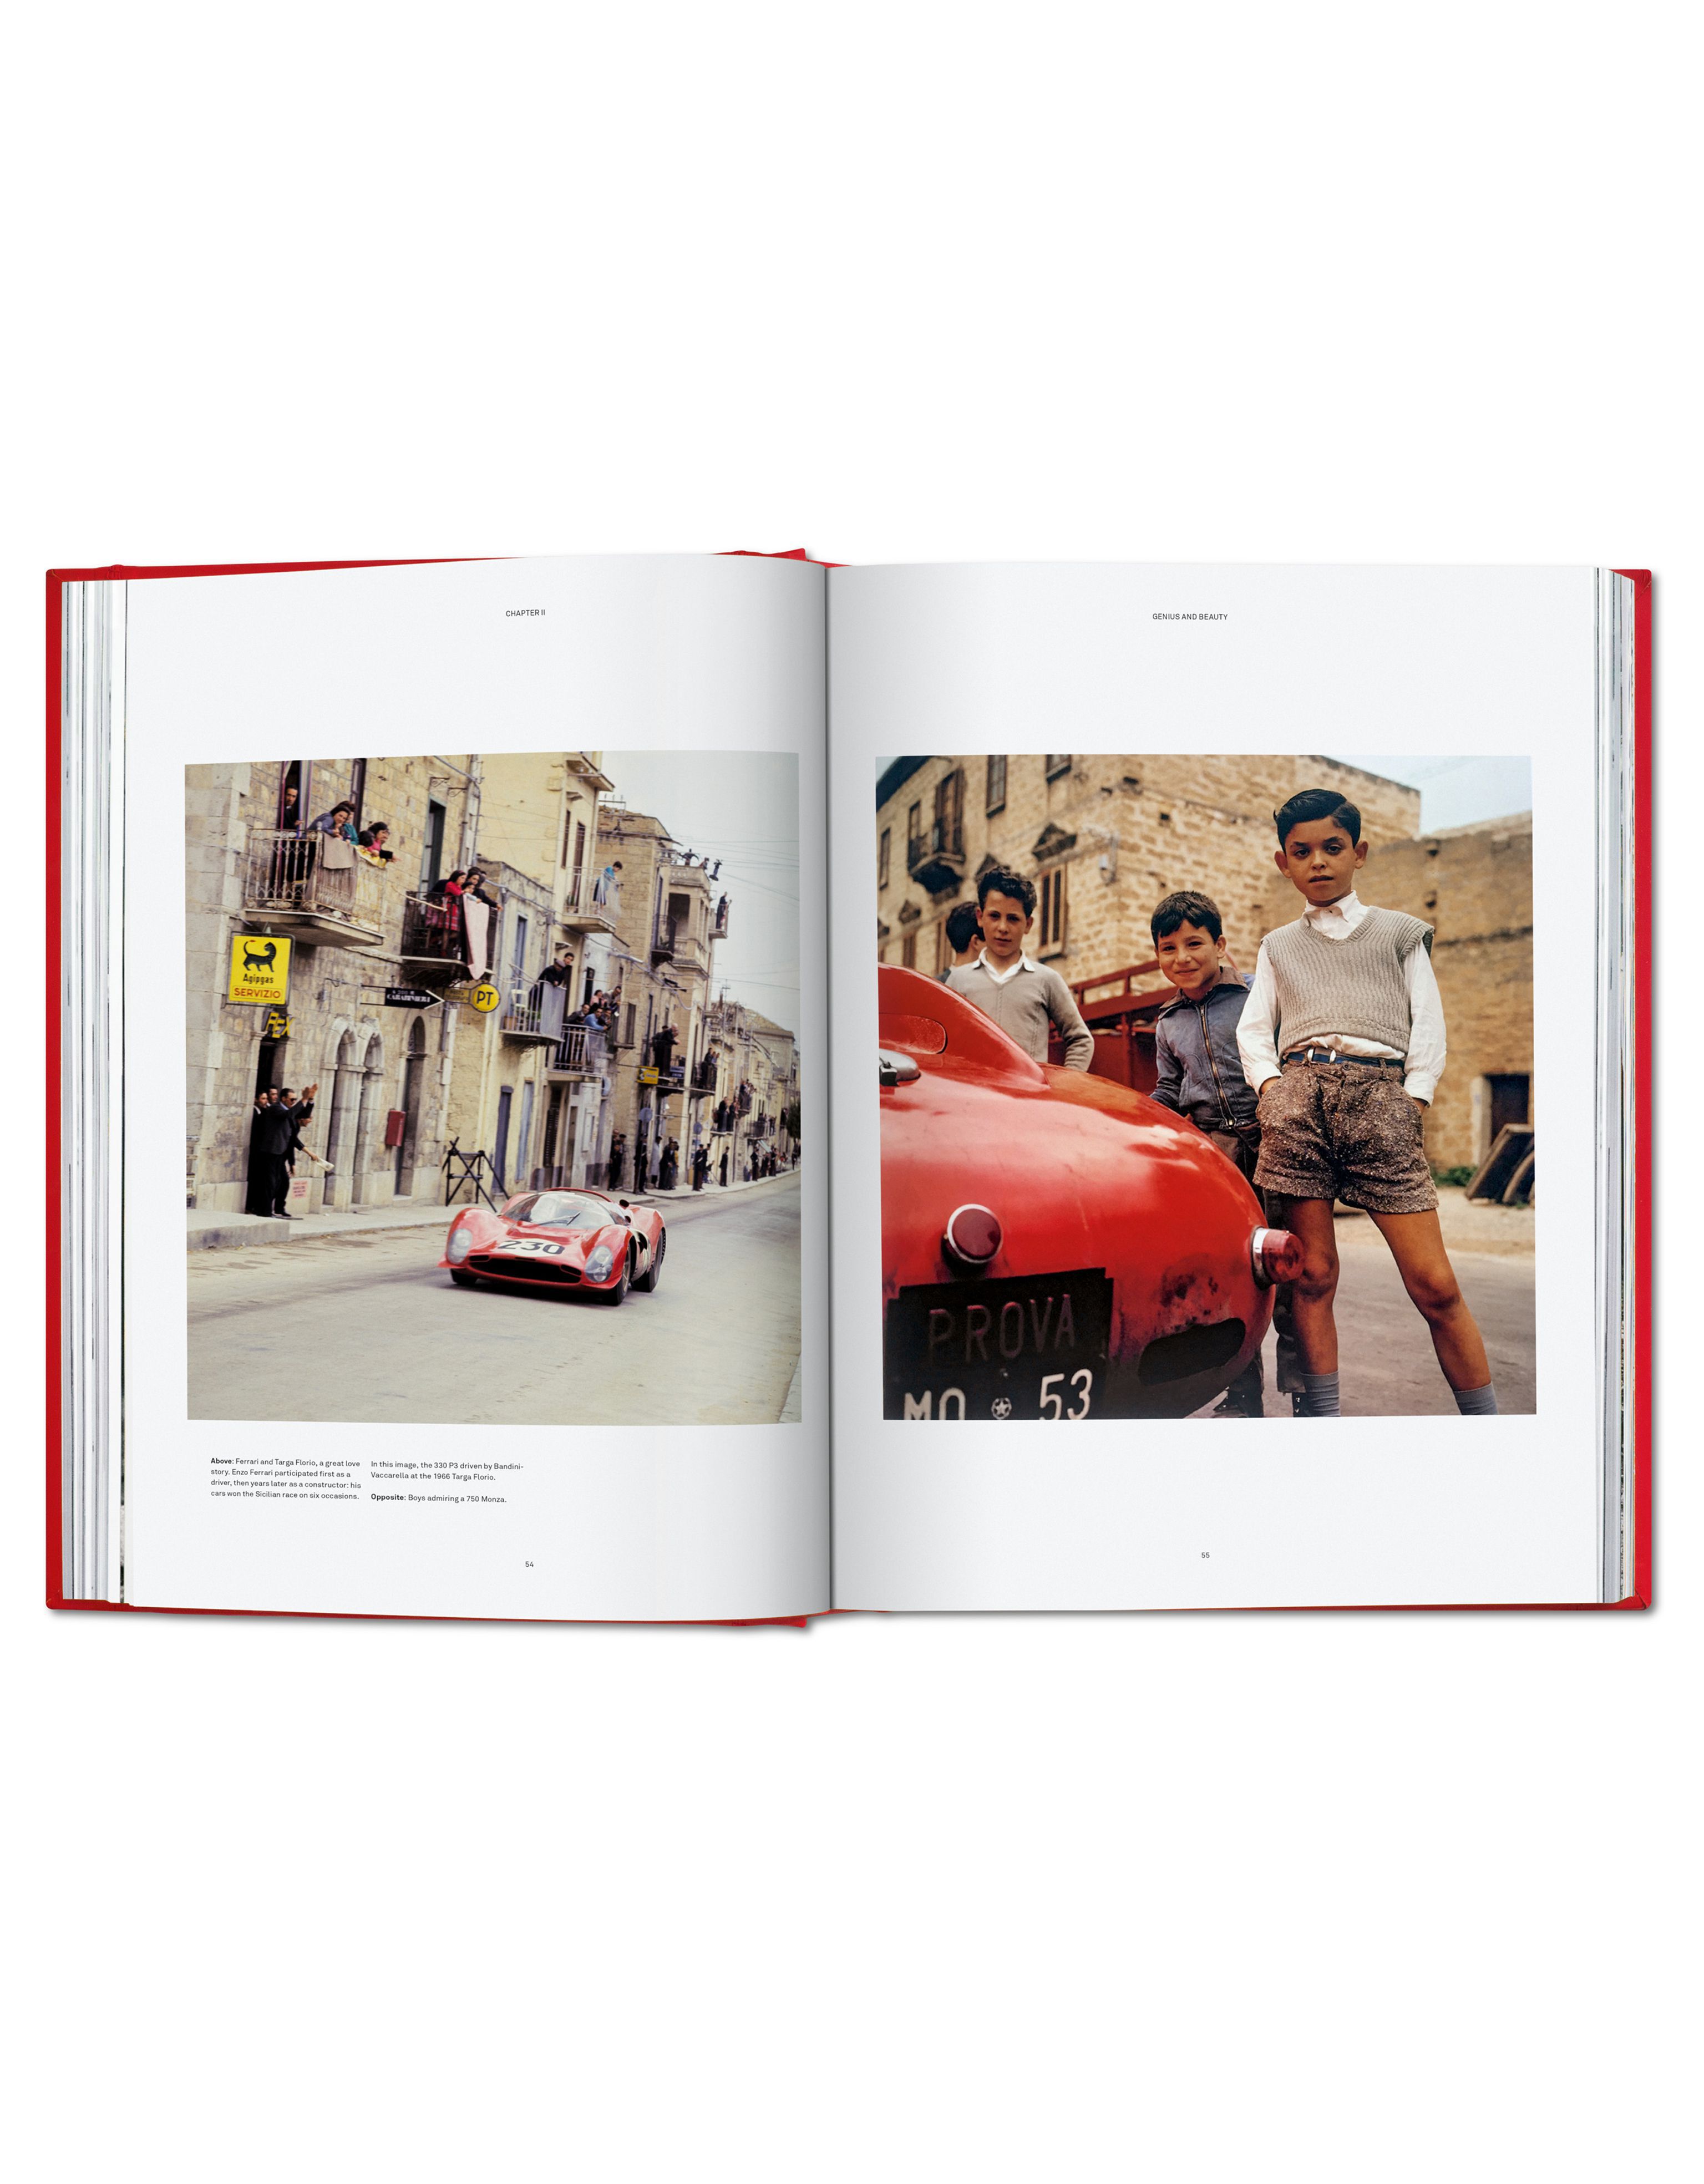 Ferrari Livre Ferrari Collector’s Edition en édition limitée MULTICOLORE L7765f